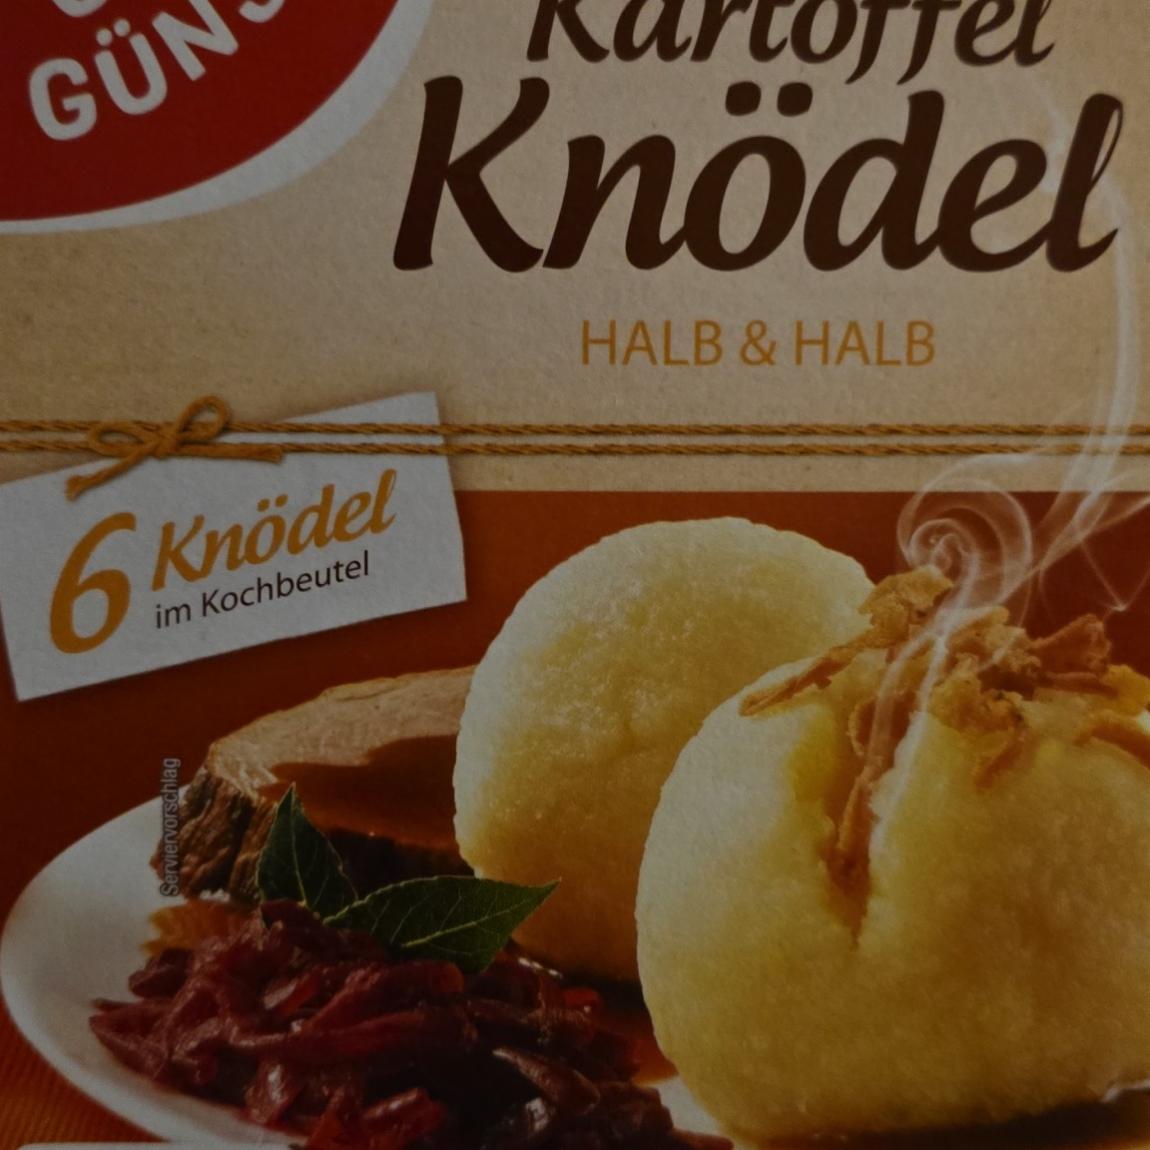 Fotografie - Kartoffel Knödel Halb & Halb Gut & Günstig